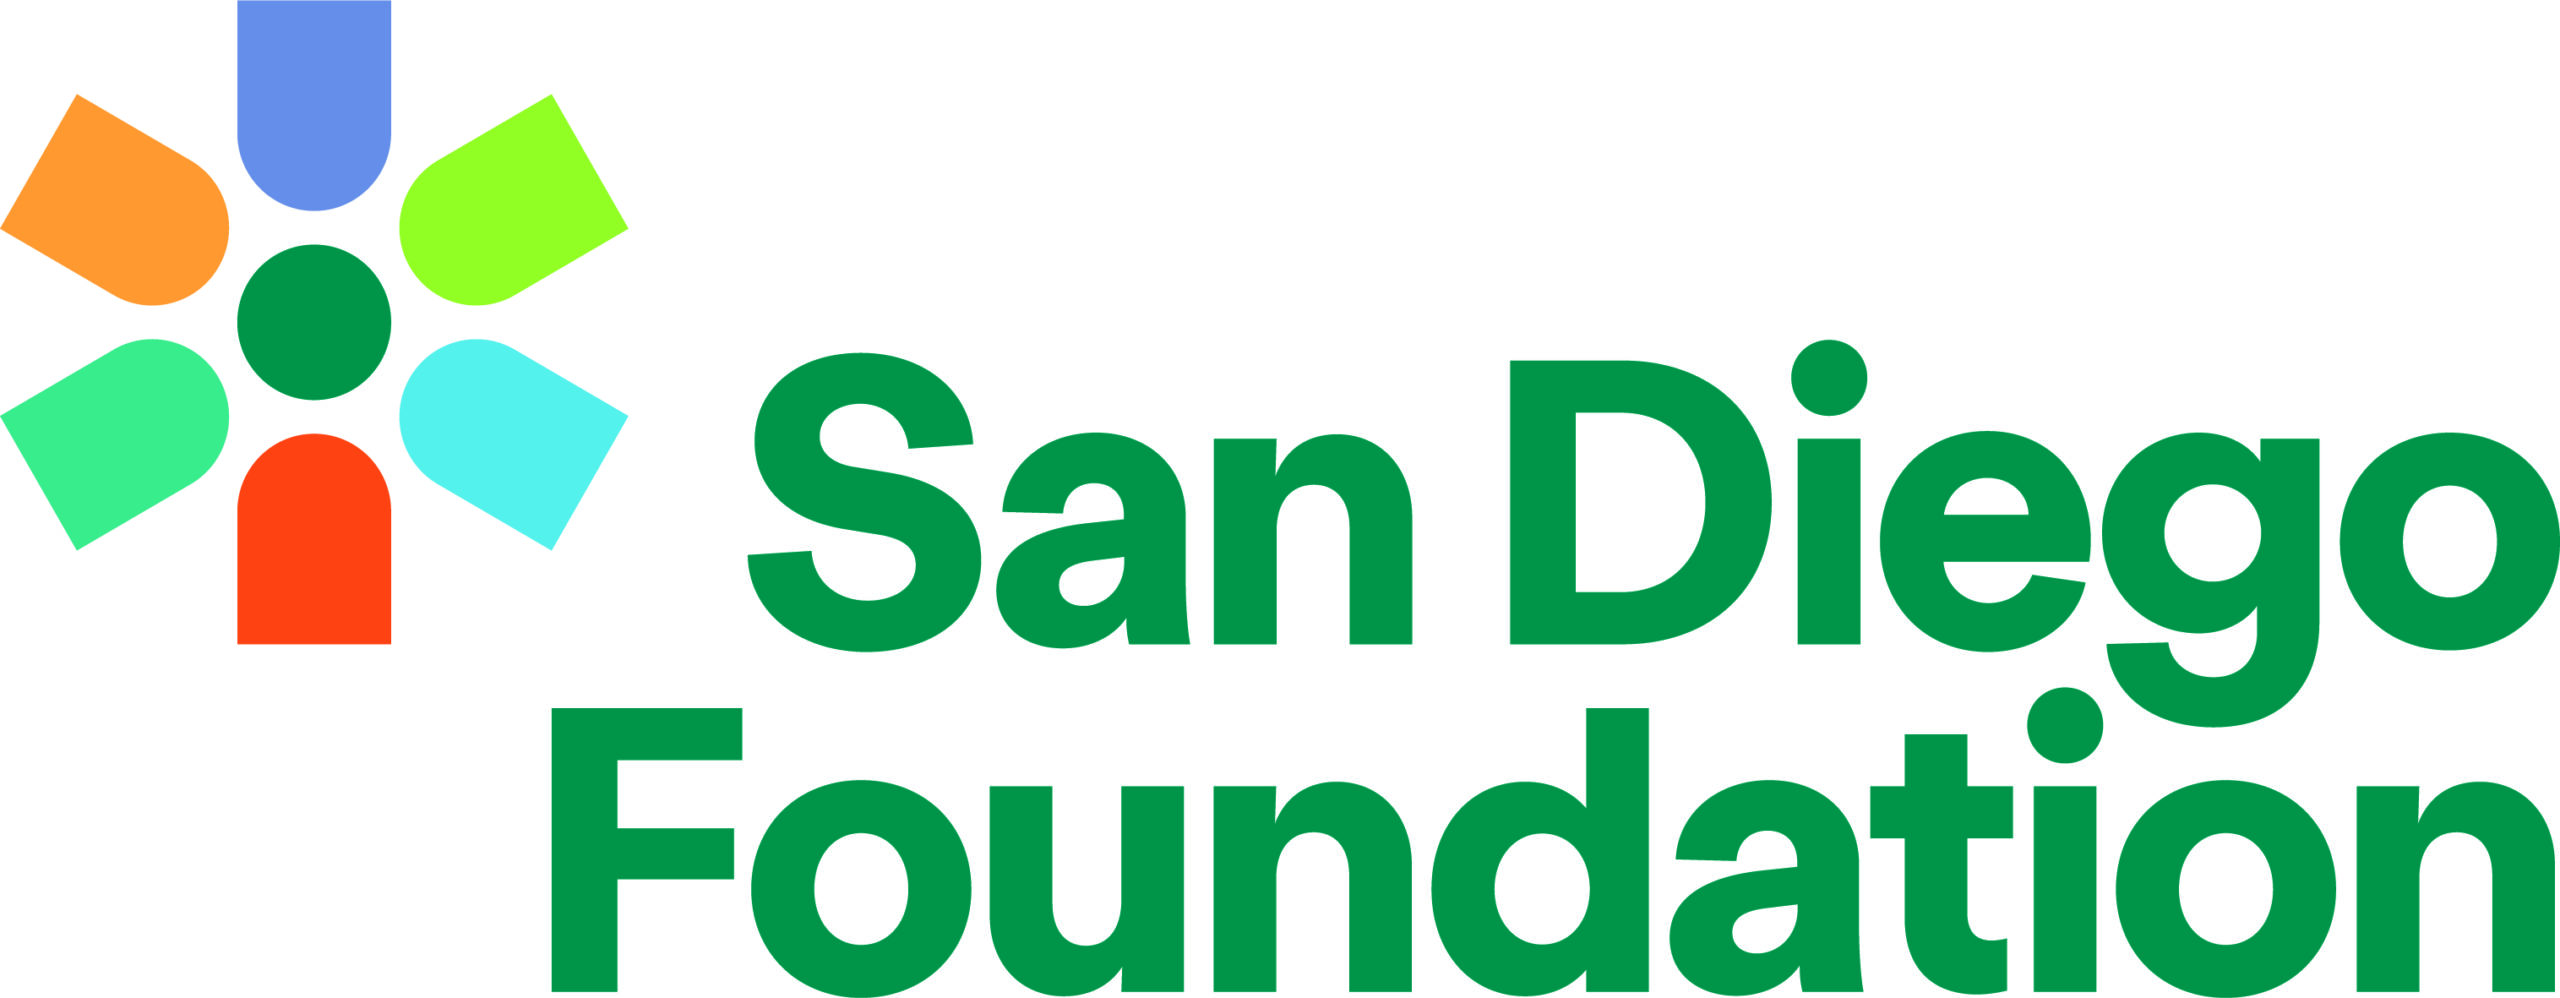 SD Foundation logo